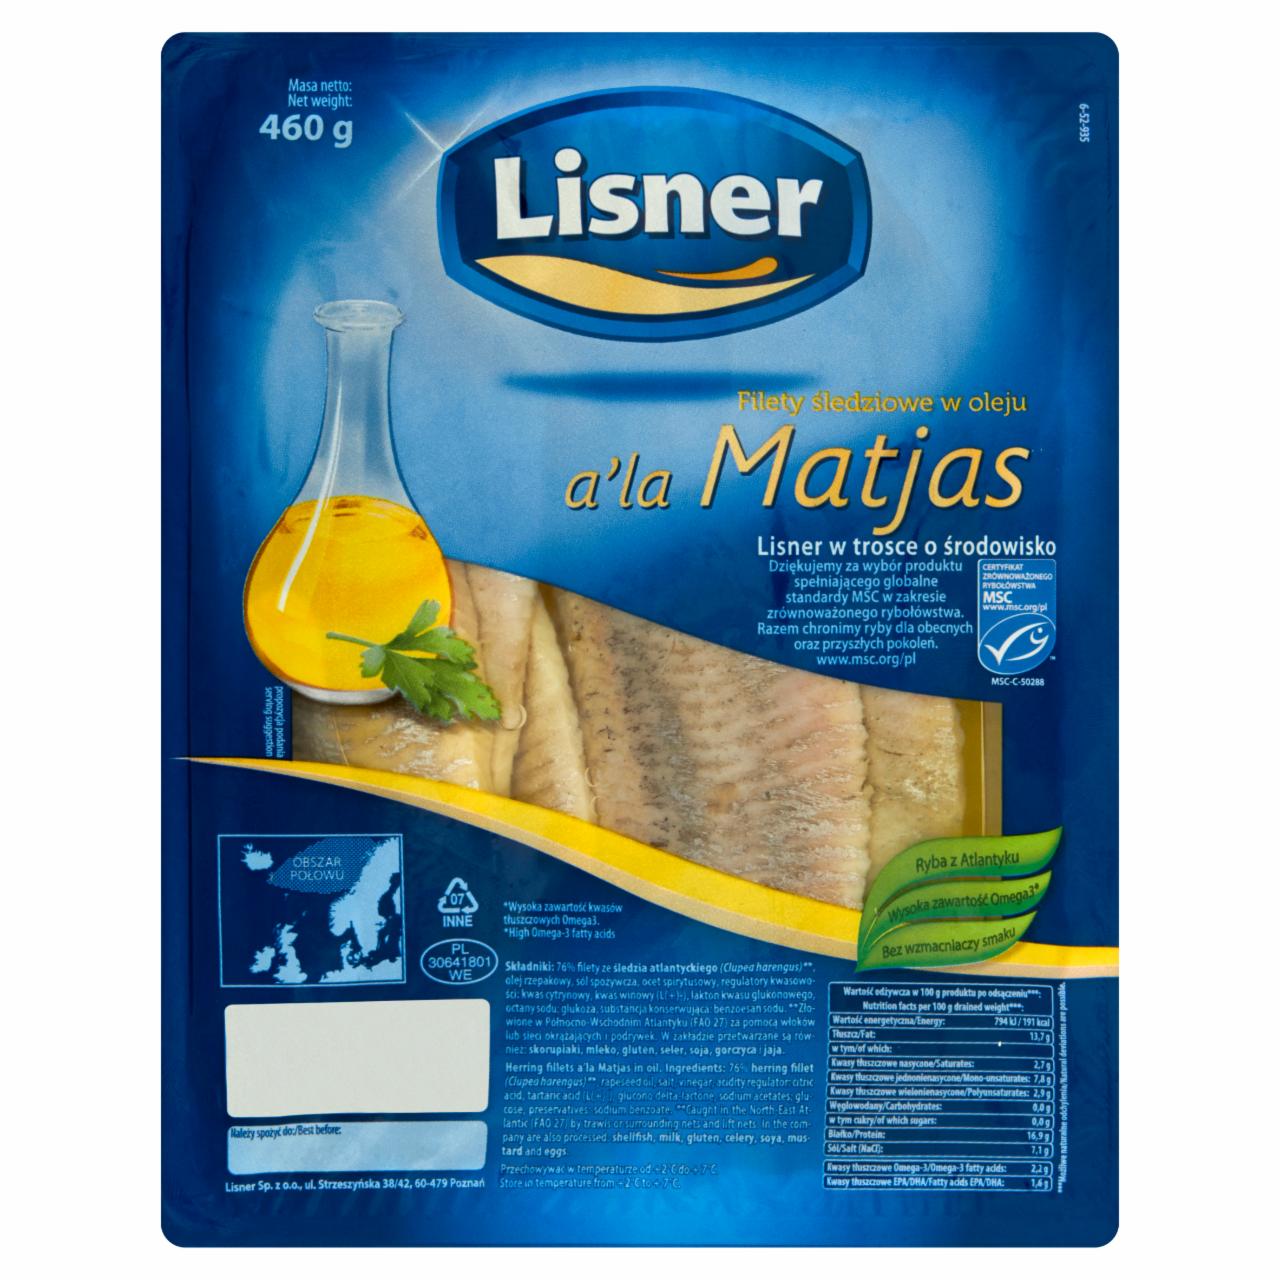 Zdjęcia - Lisner Filety śledziowe w oleju a'la Matjas 460 g